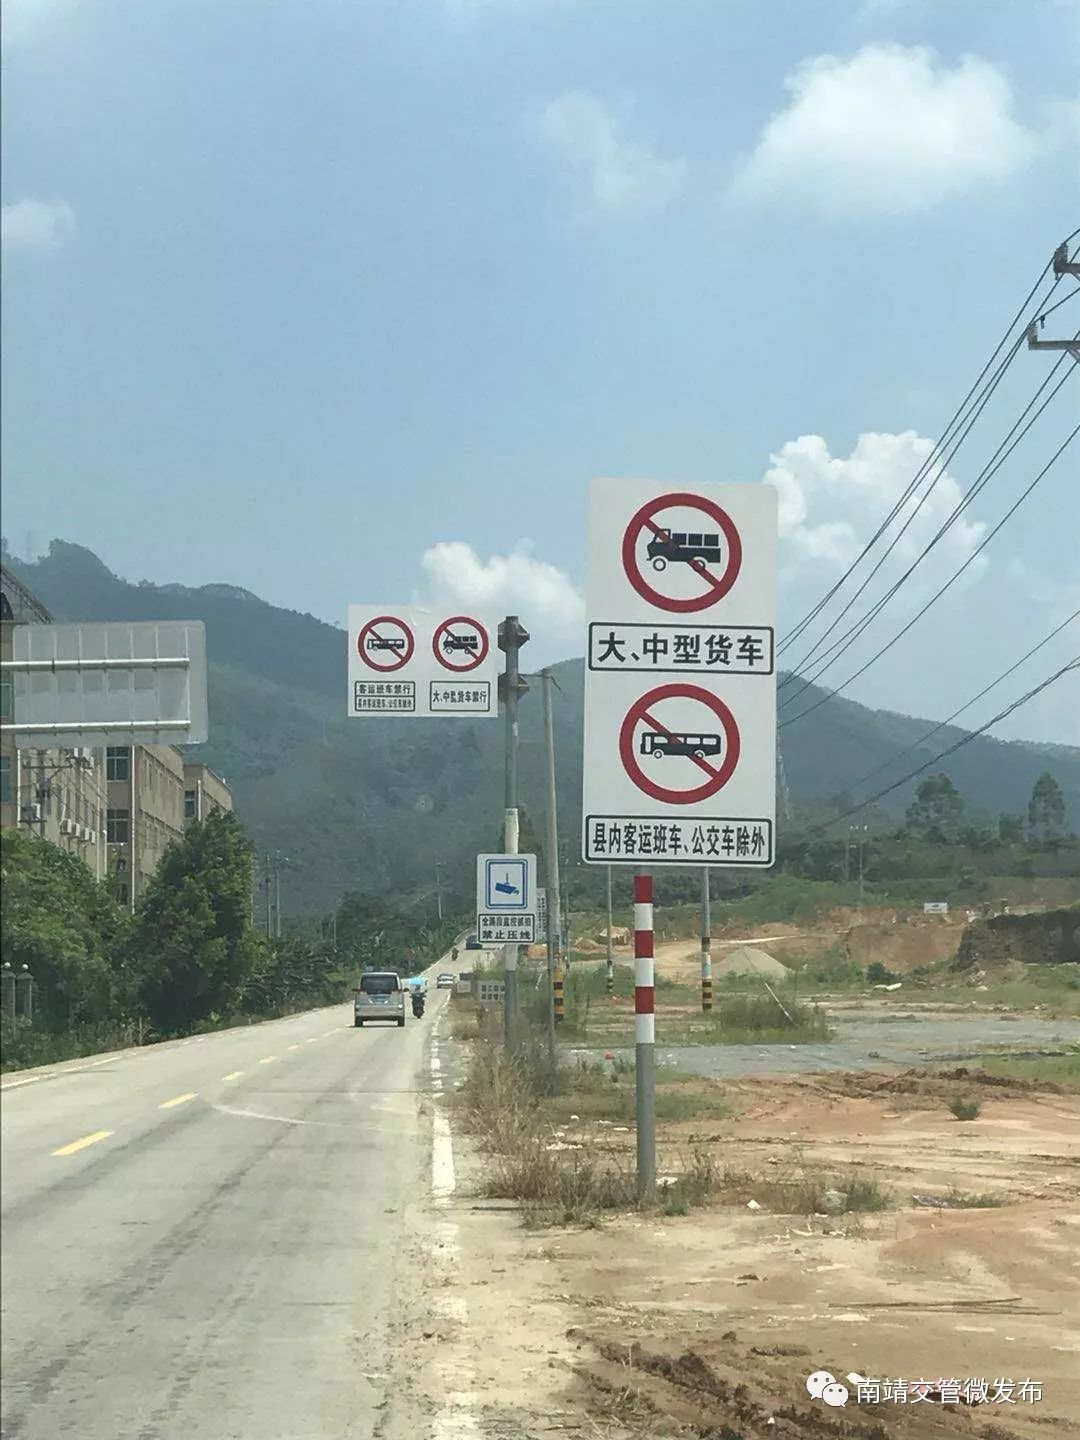 禁止压线的交通标志图片